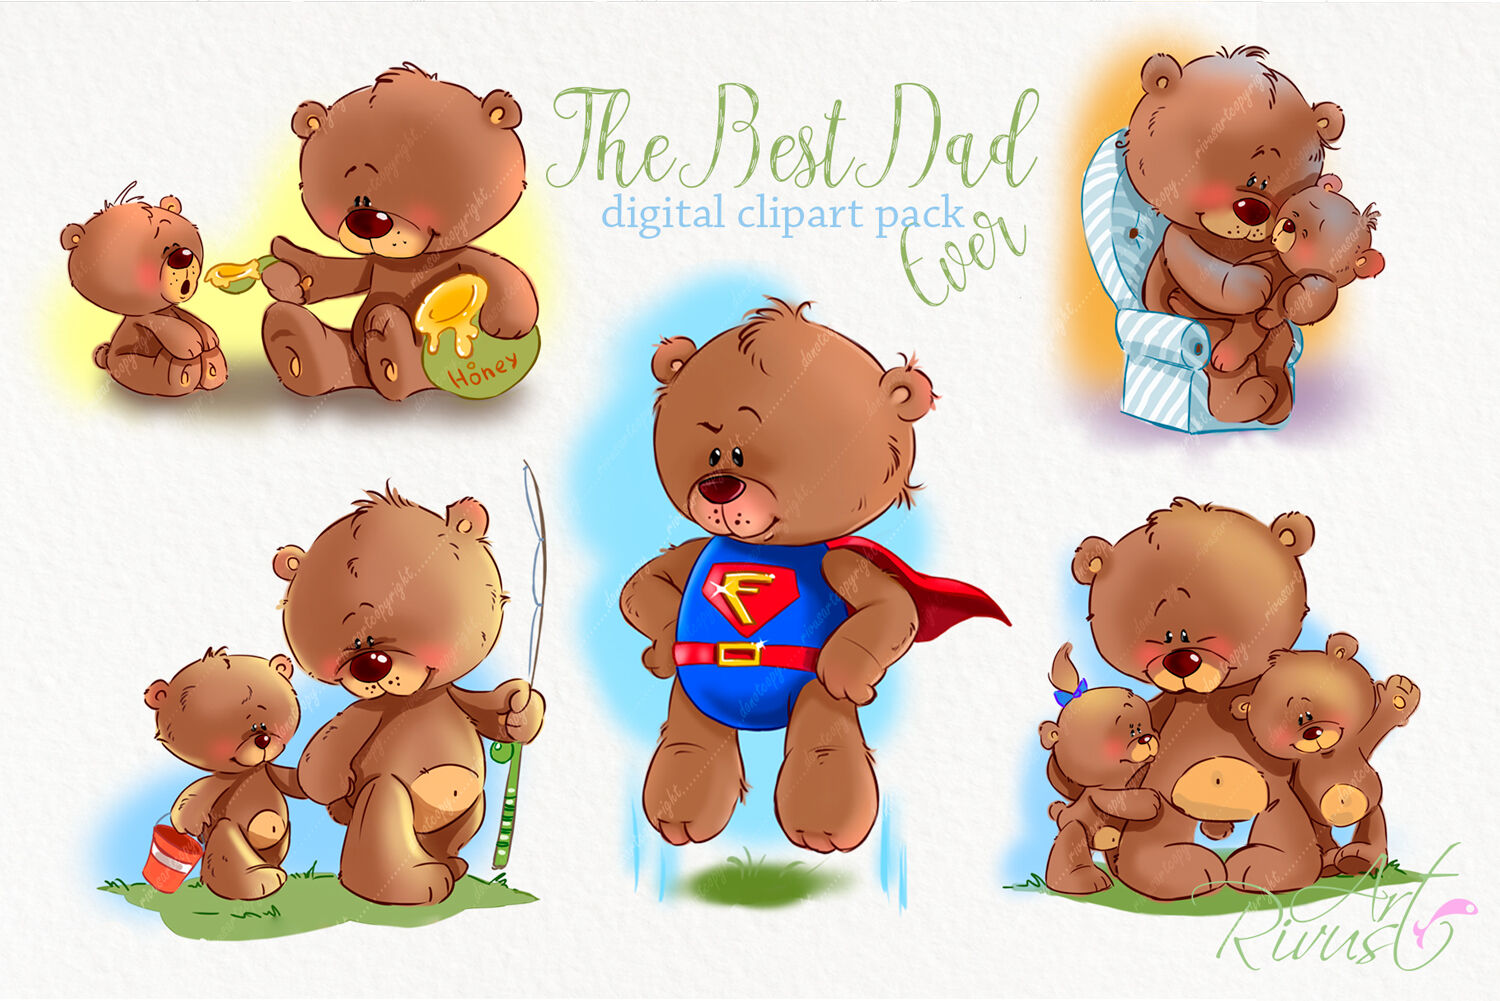 5 Cute Teddy Bear Clipart! - The Graphics Fairy